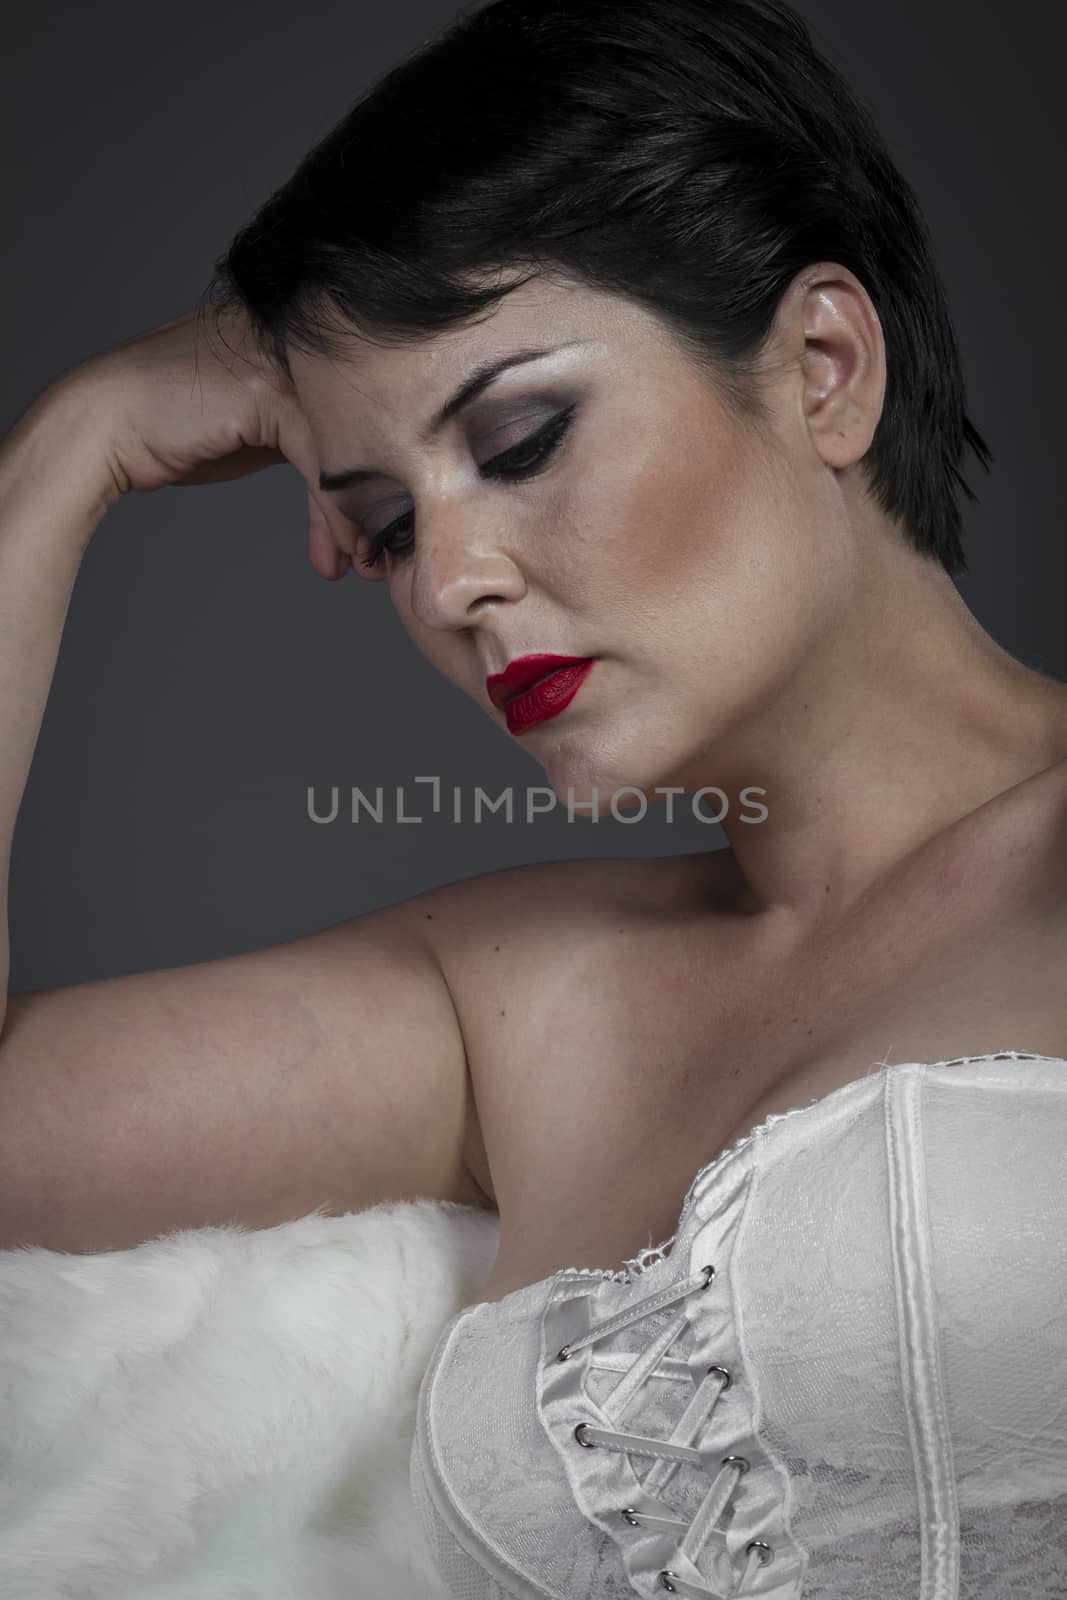 Studio, Sensual brunette in lingerie, beauty model by FernandoCortes